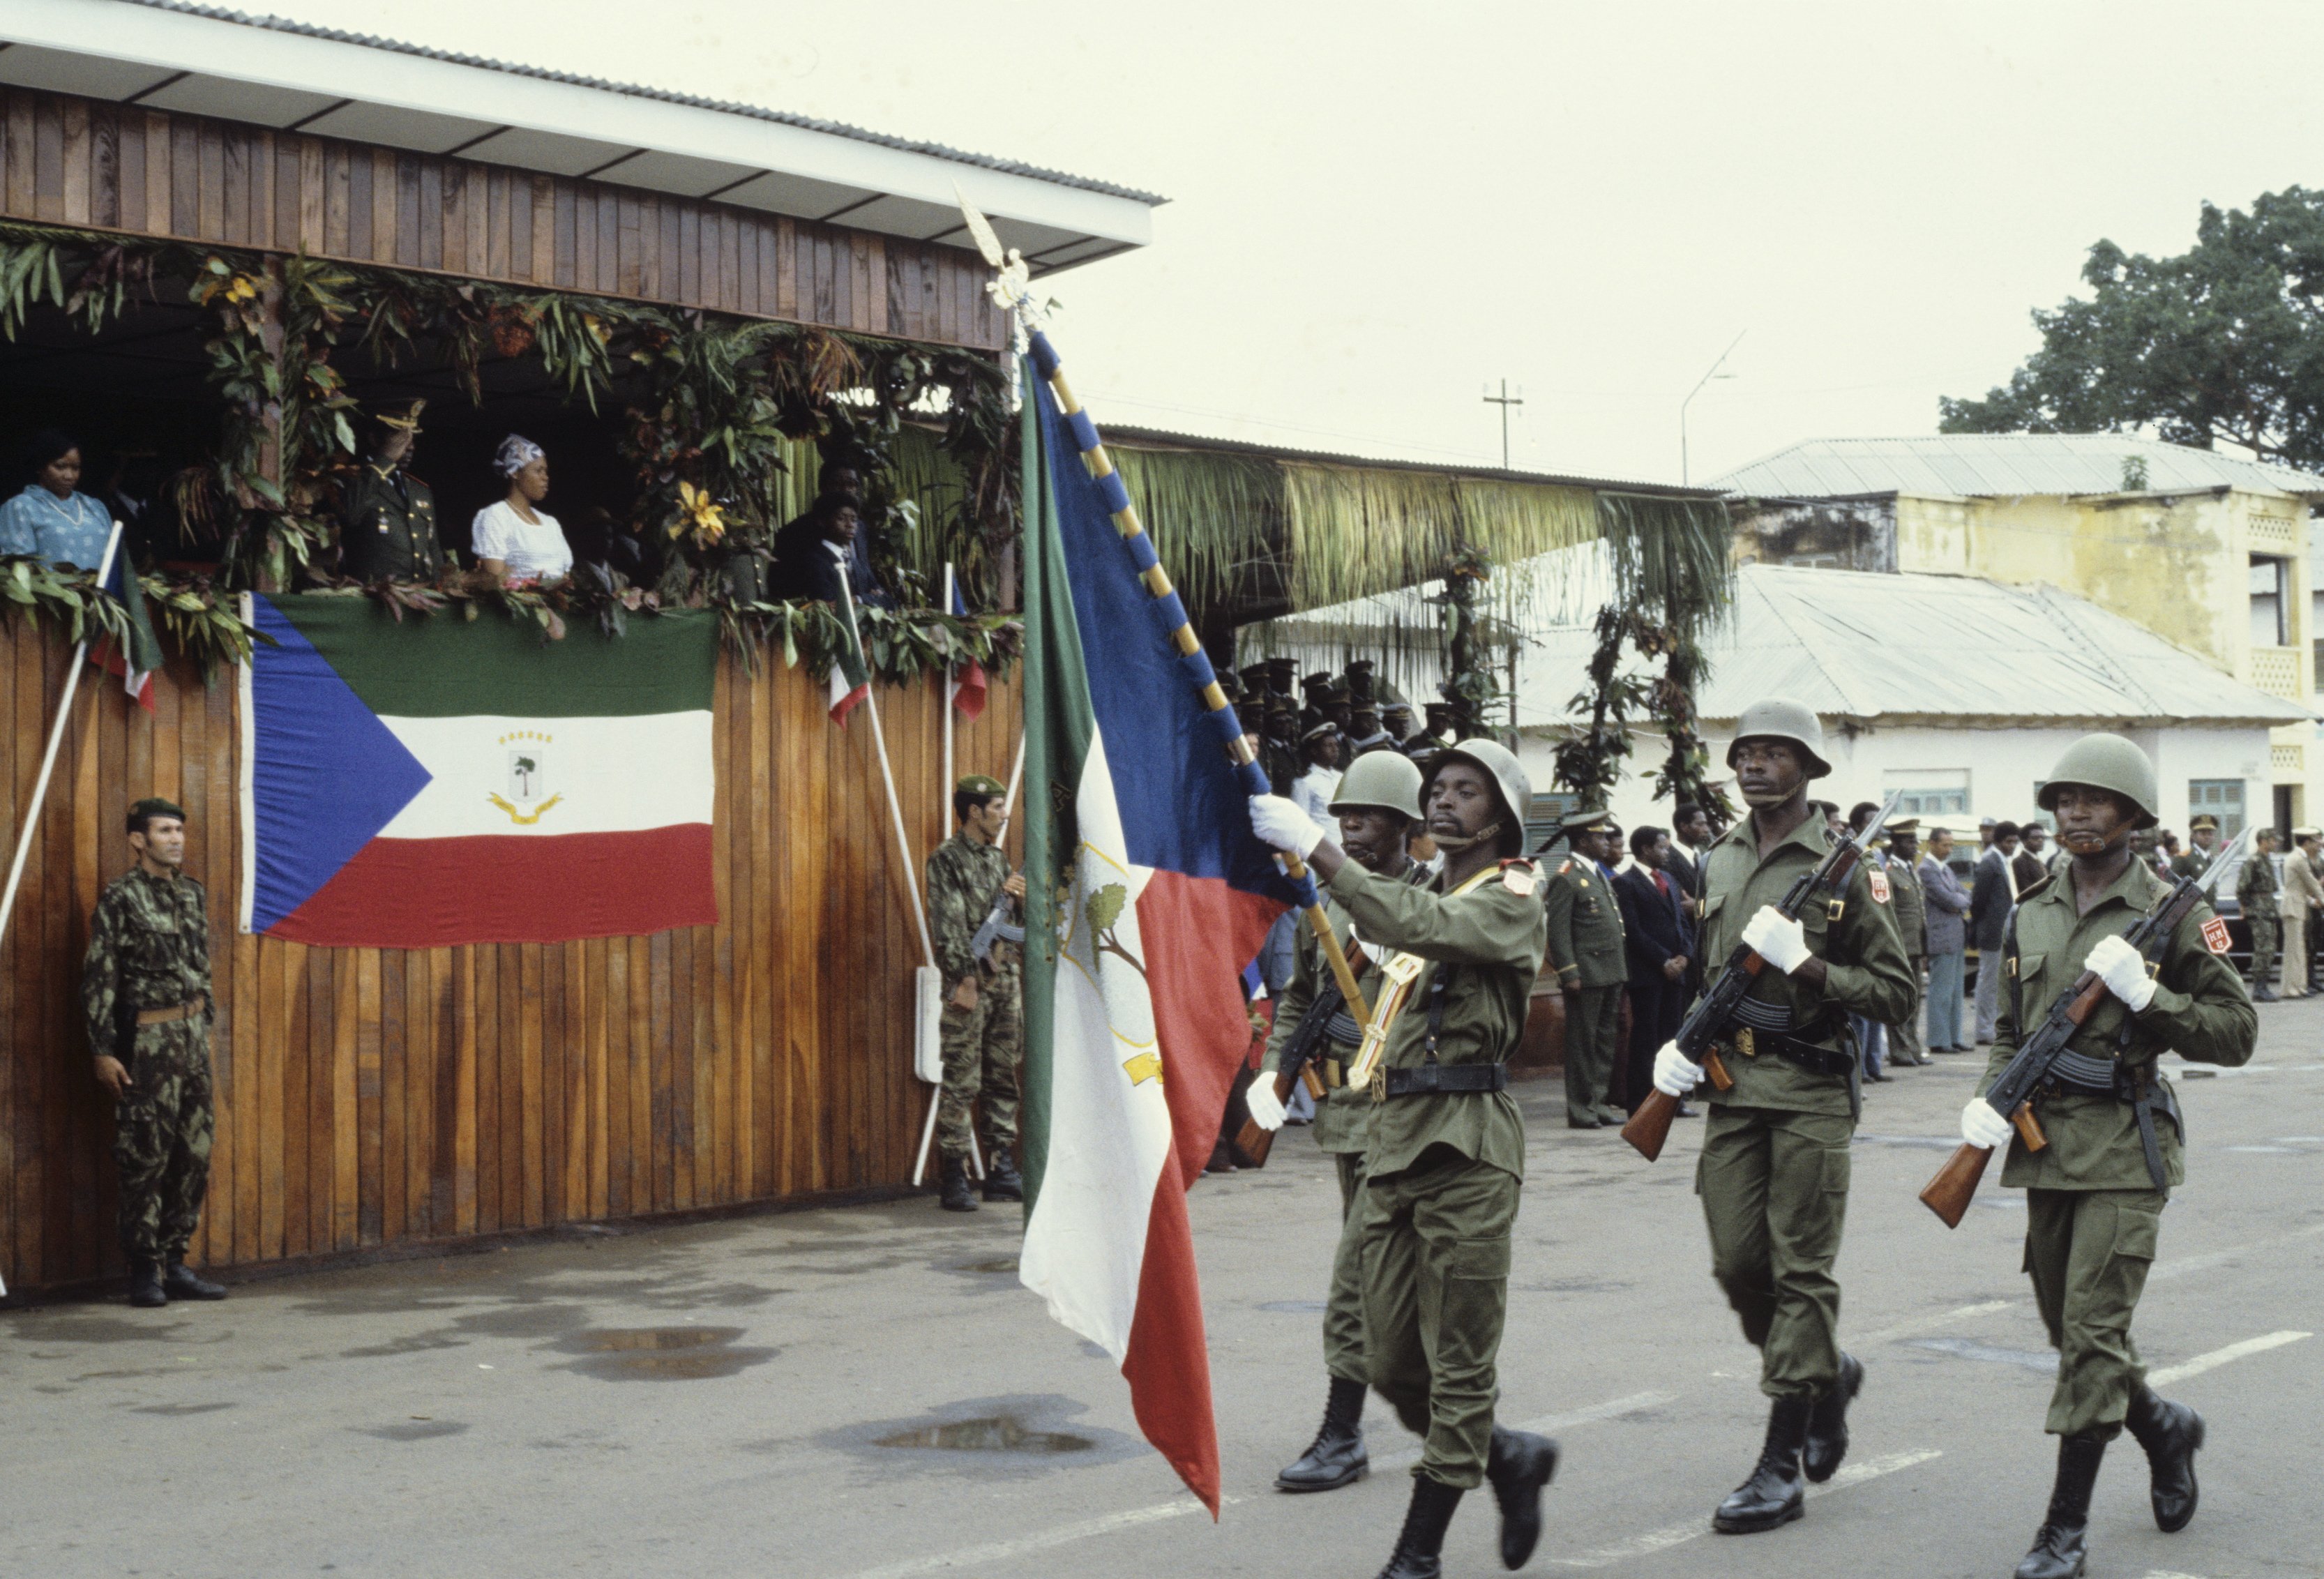 Quan l'ambaixada espanyola a Guinea estava sota setge. Un precedent al cas Leopoldo López